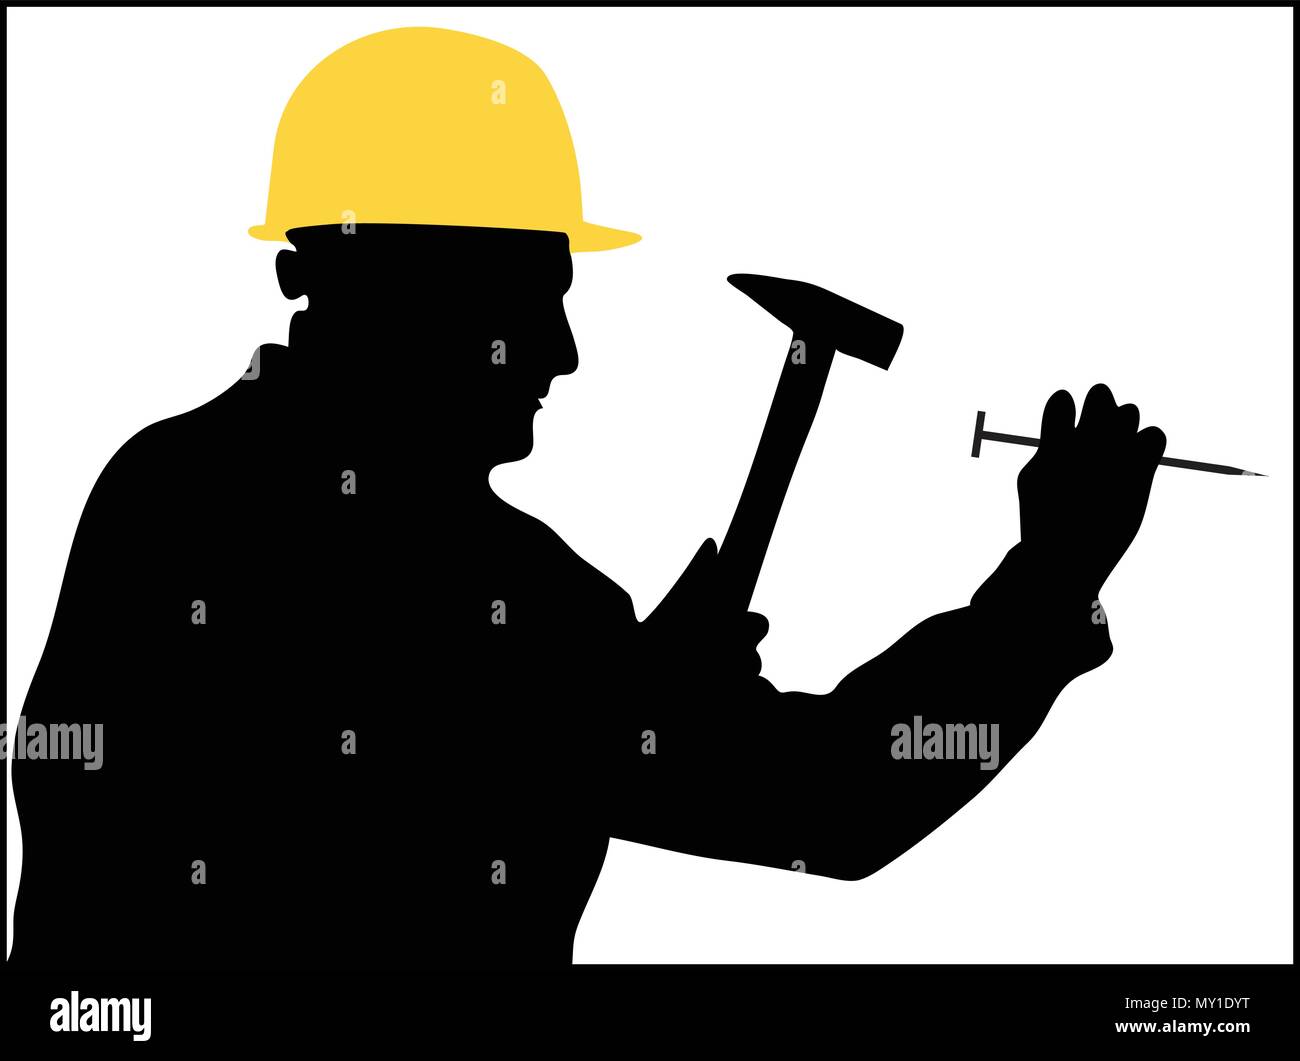 L'homme se sert d'un marteau pour frapper un clou vector silhouettes Illustration de Vecteur